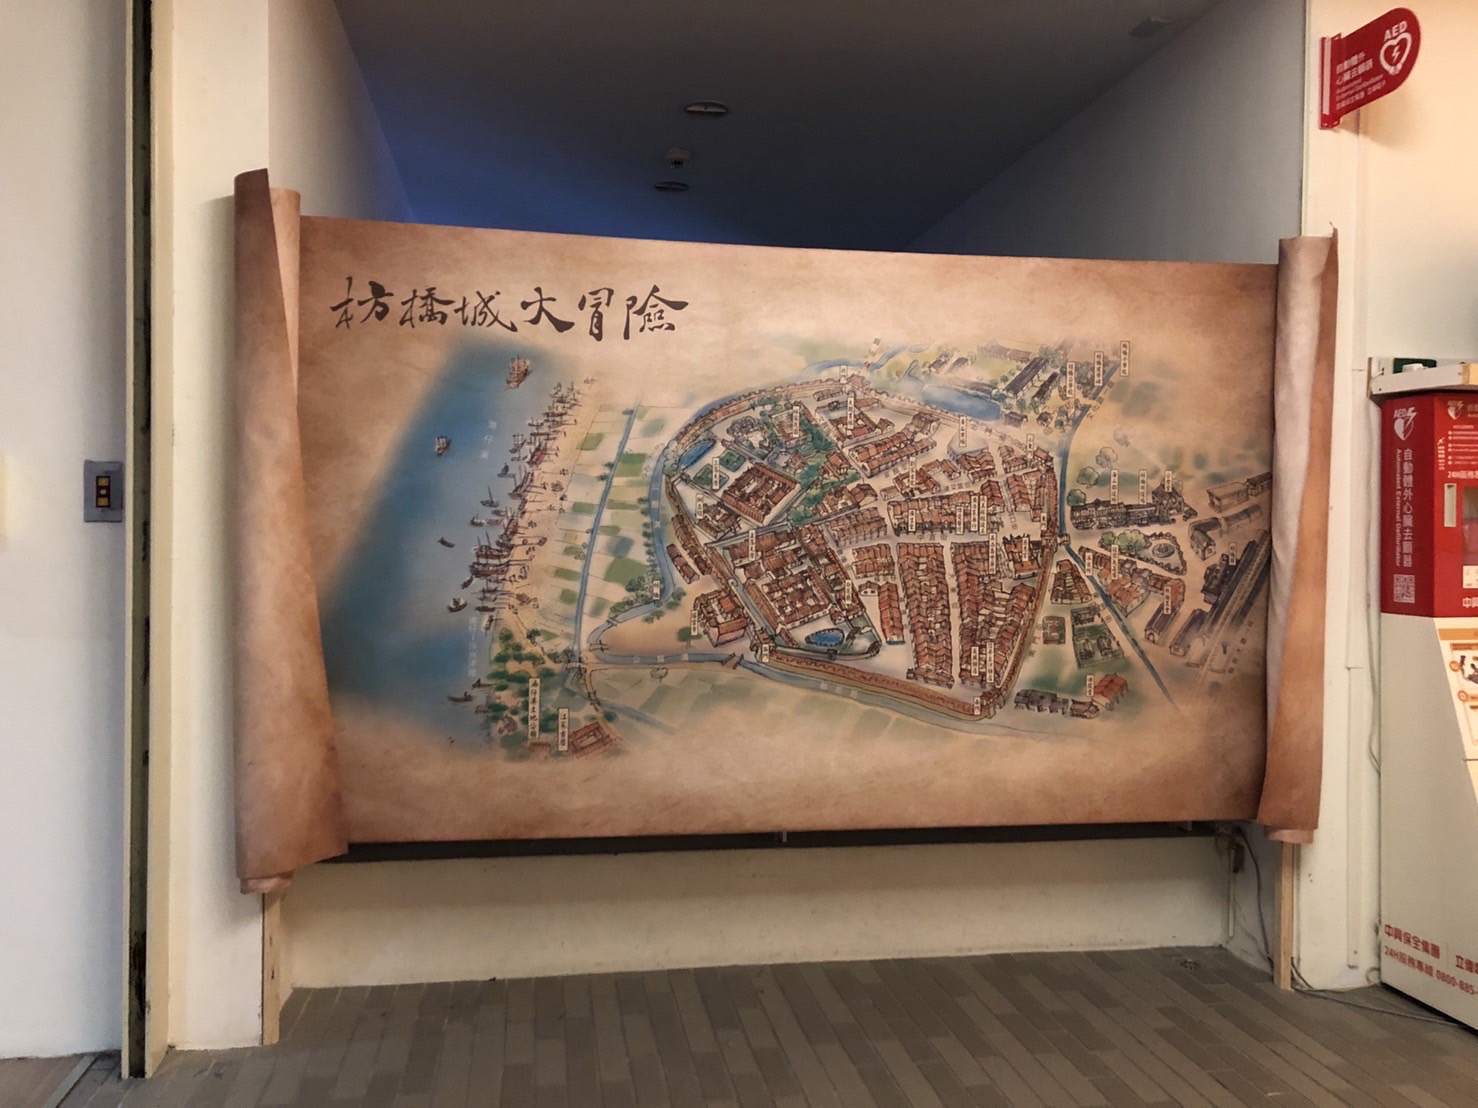 以「枋橋城復原」古地圖，說明枋橋城的故事，昔日河運與商業興起、興建廟宇等故事。